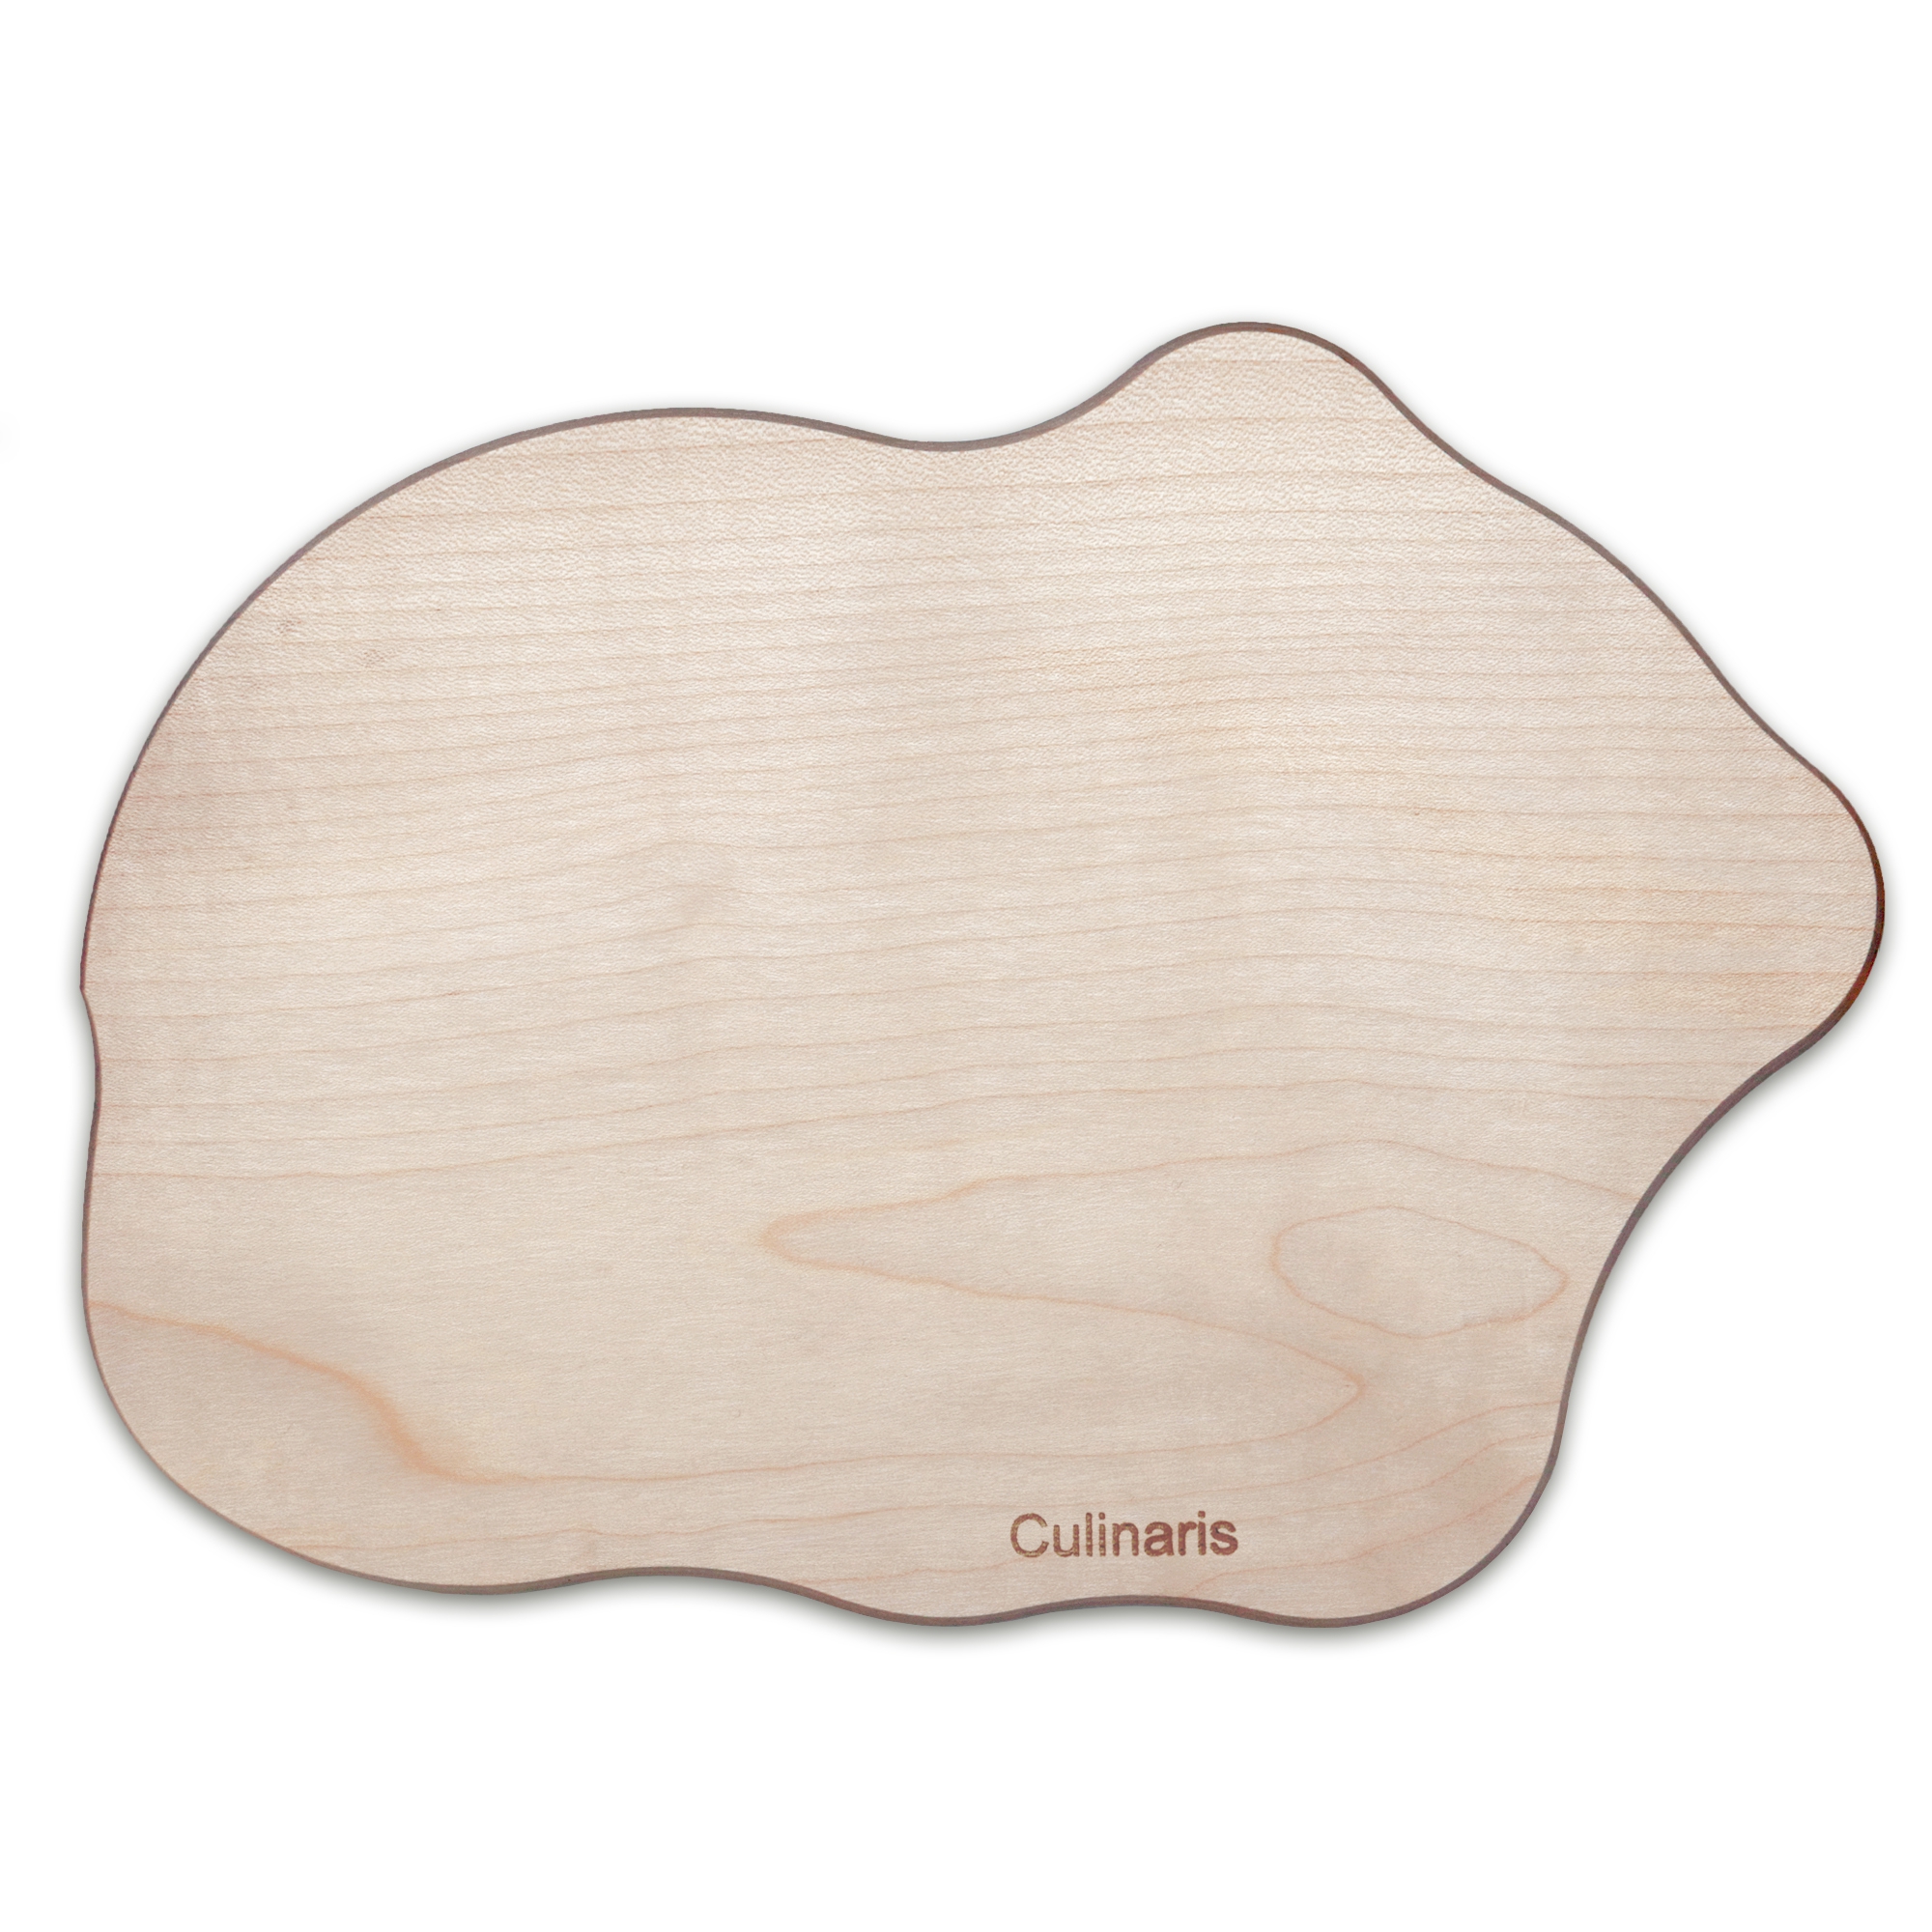 Culinaris - Breakfast board - maple wood - bear